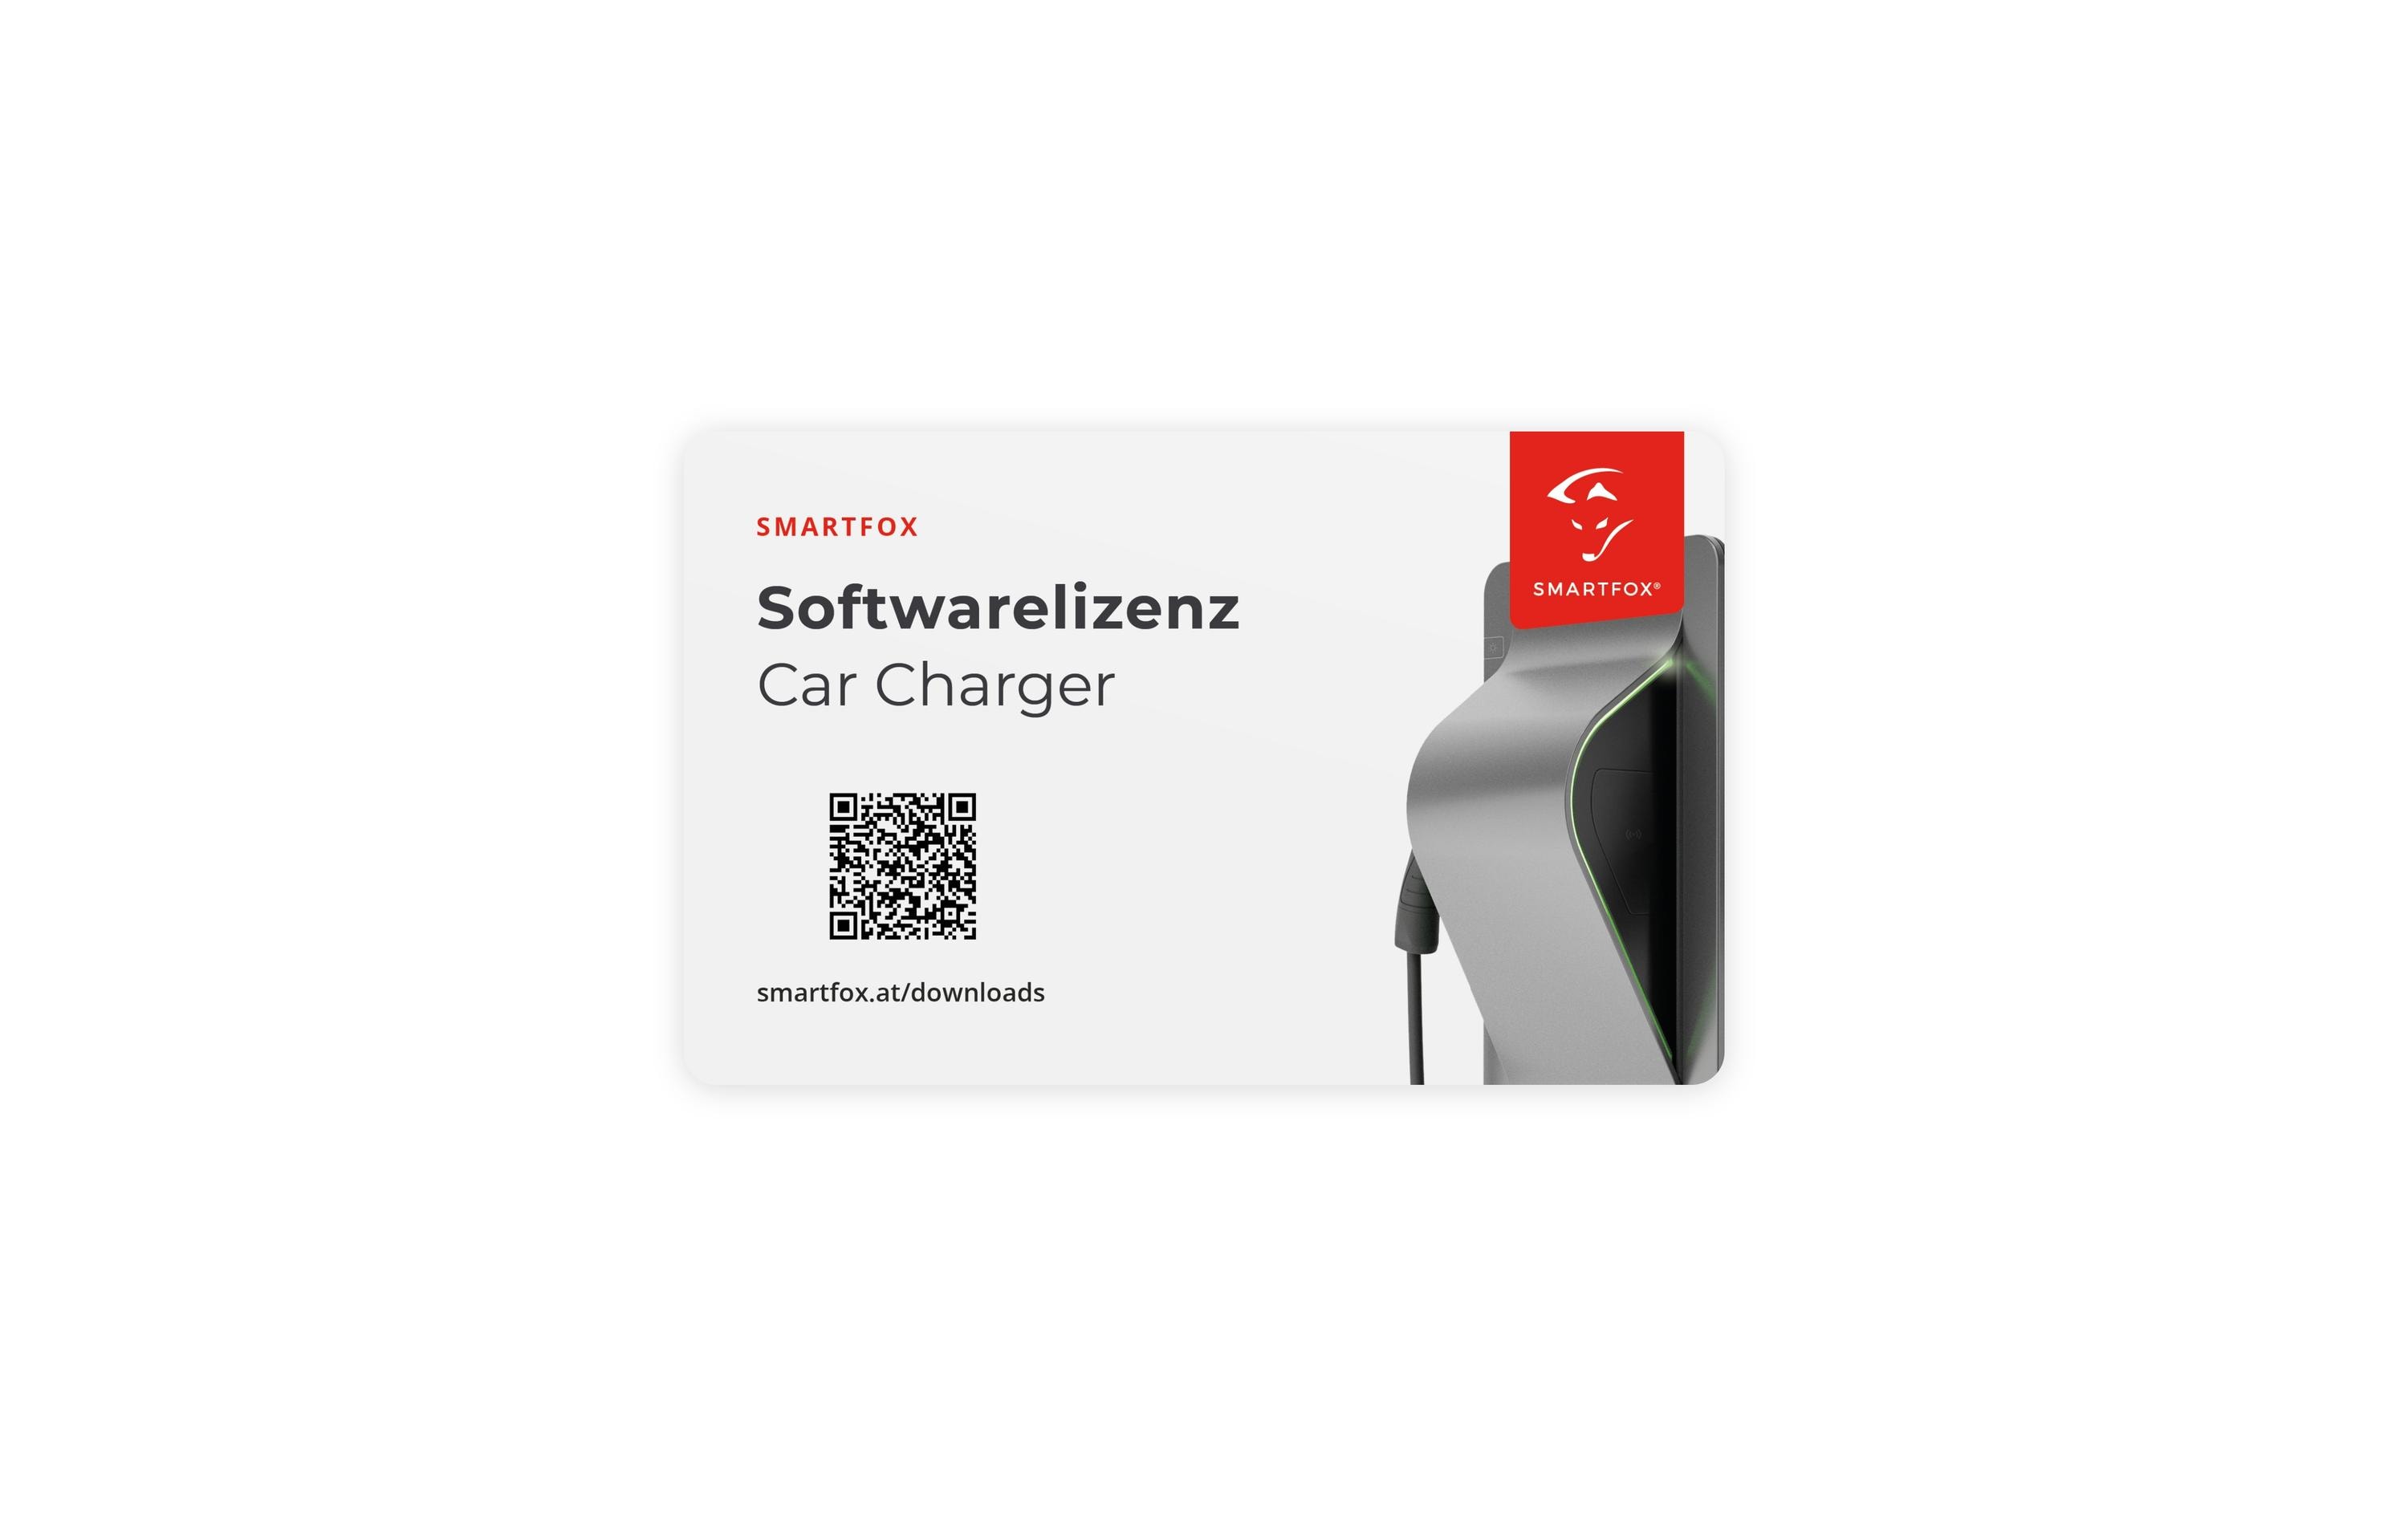 SMARTFOX Car Charger Lizenz